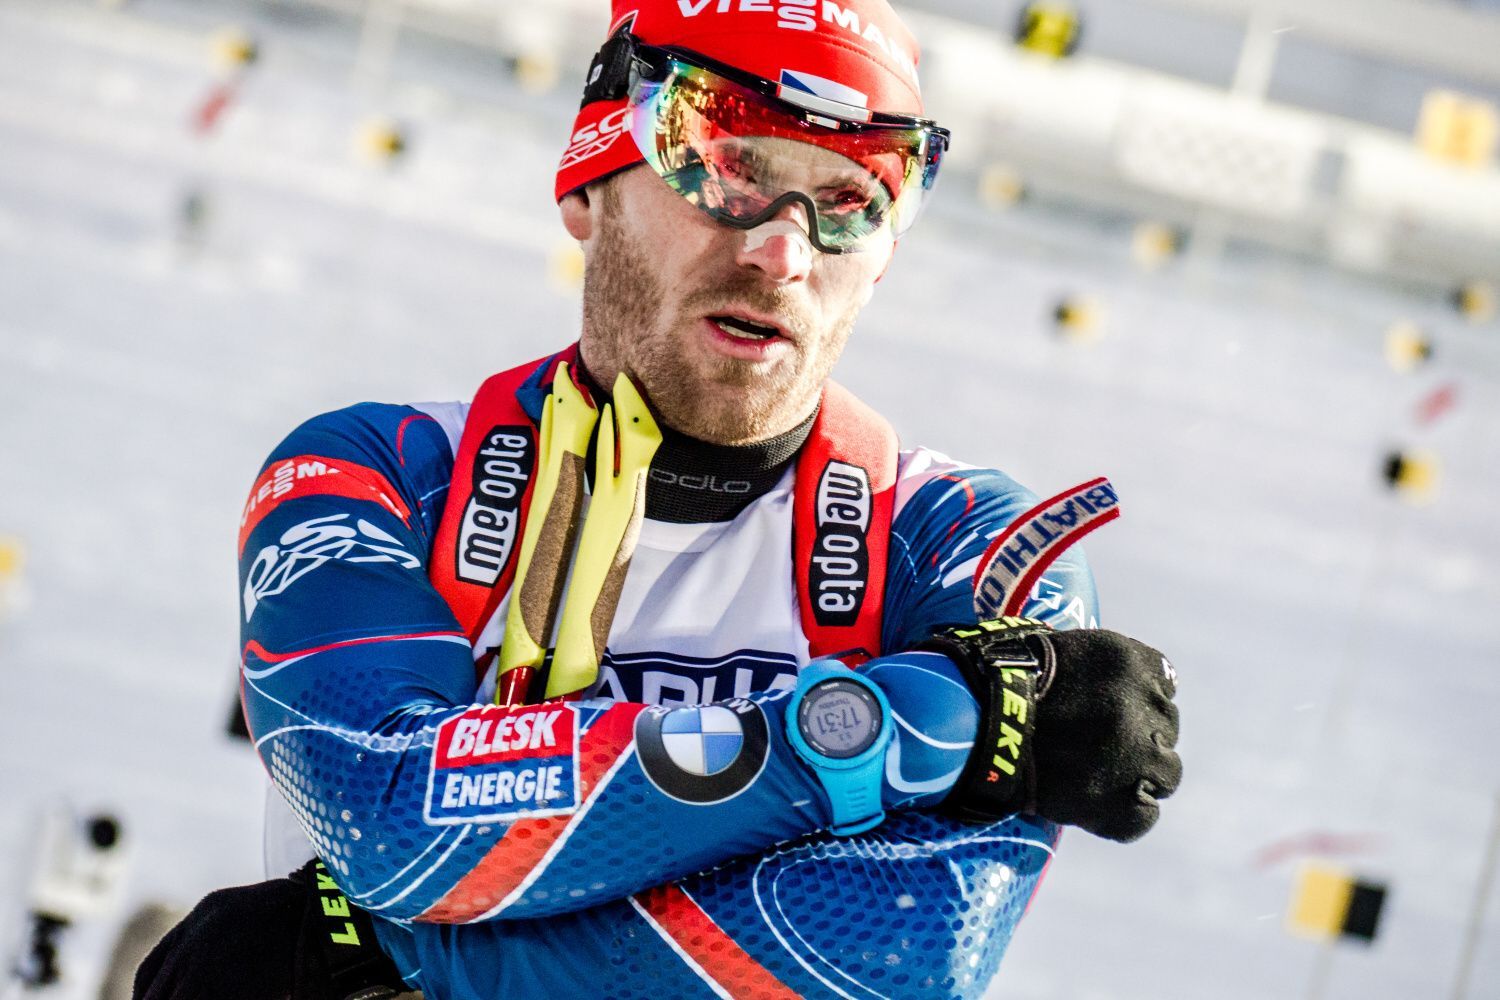 MS v biatlonu 2015: Michal Šlesingr